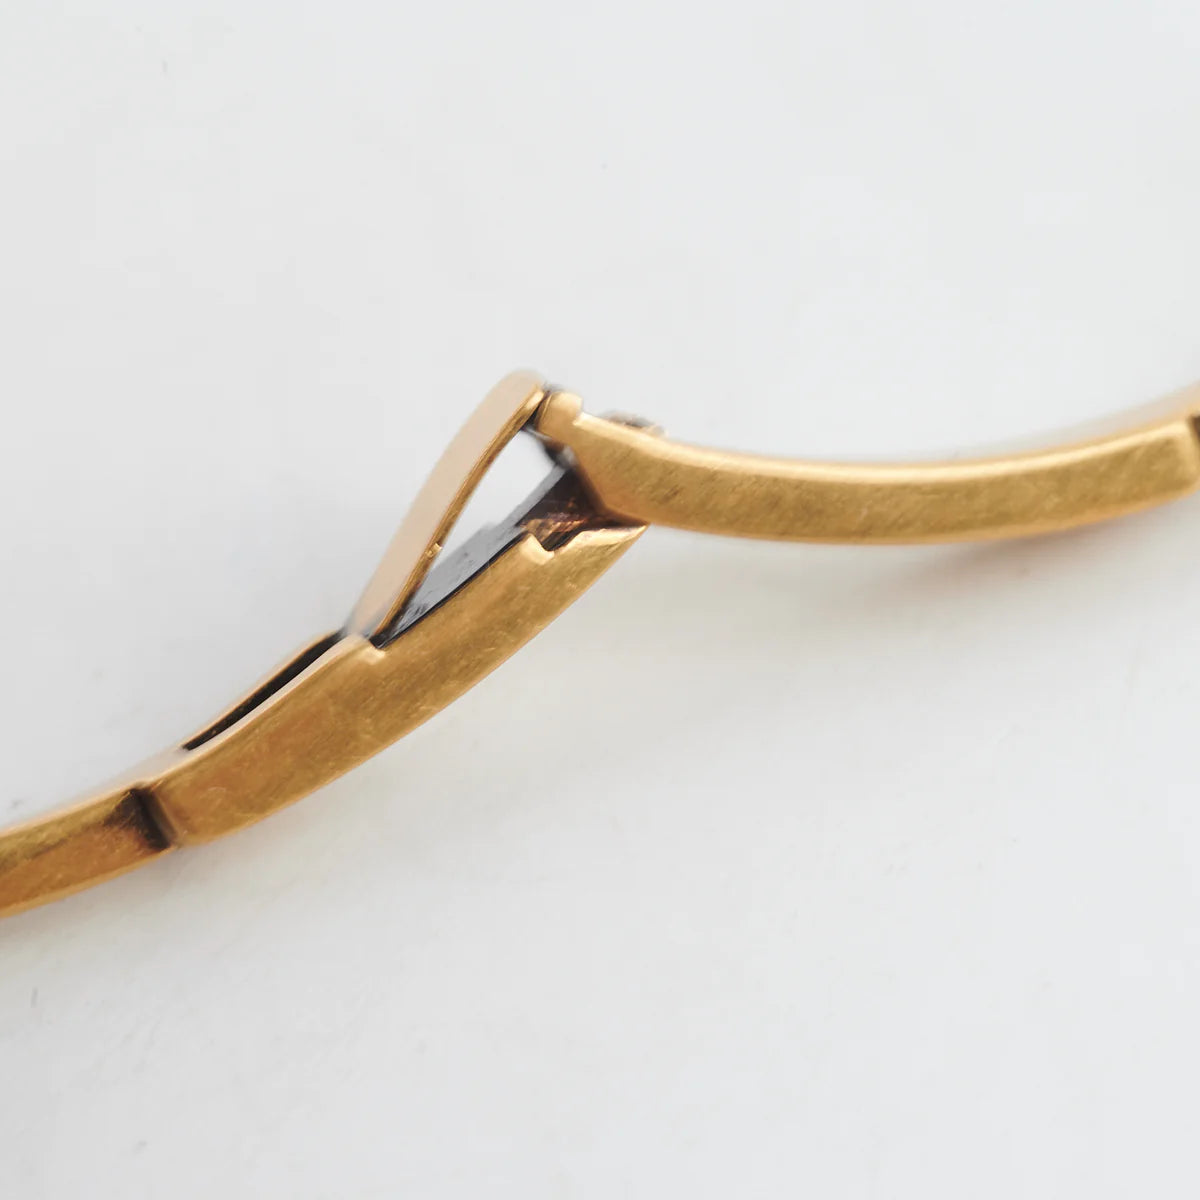 Dior J'adior Star Antique Gold Finish Bracelet